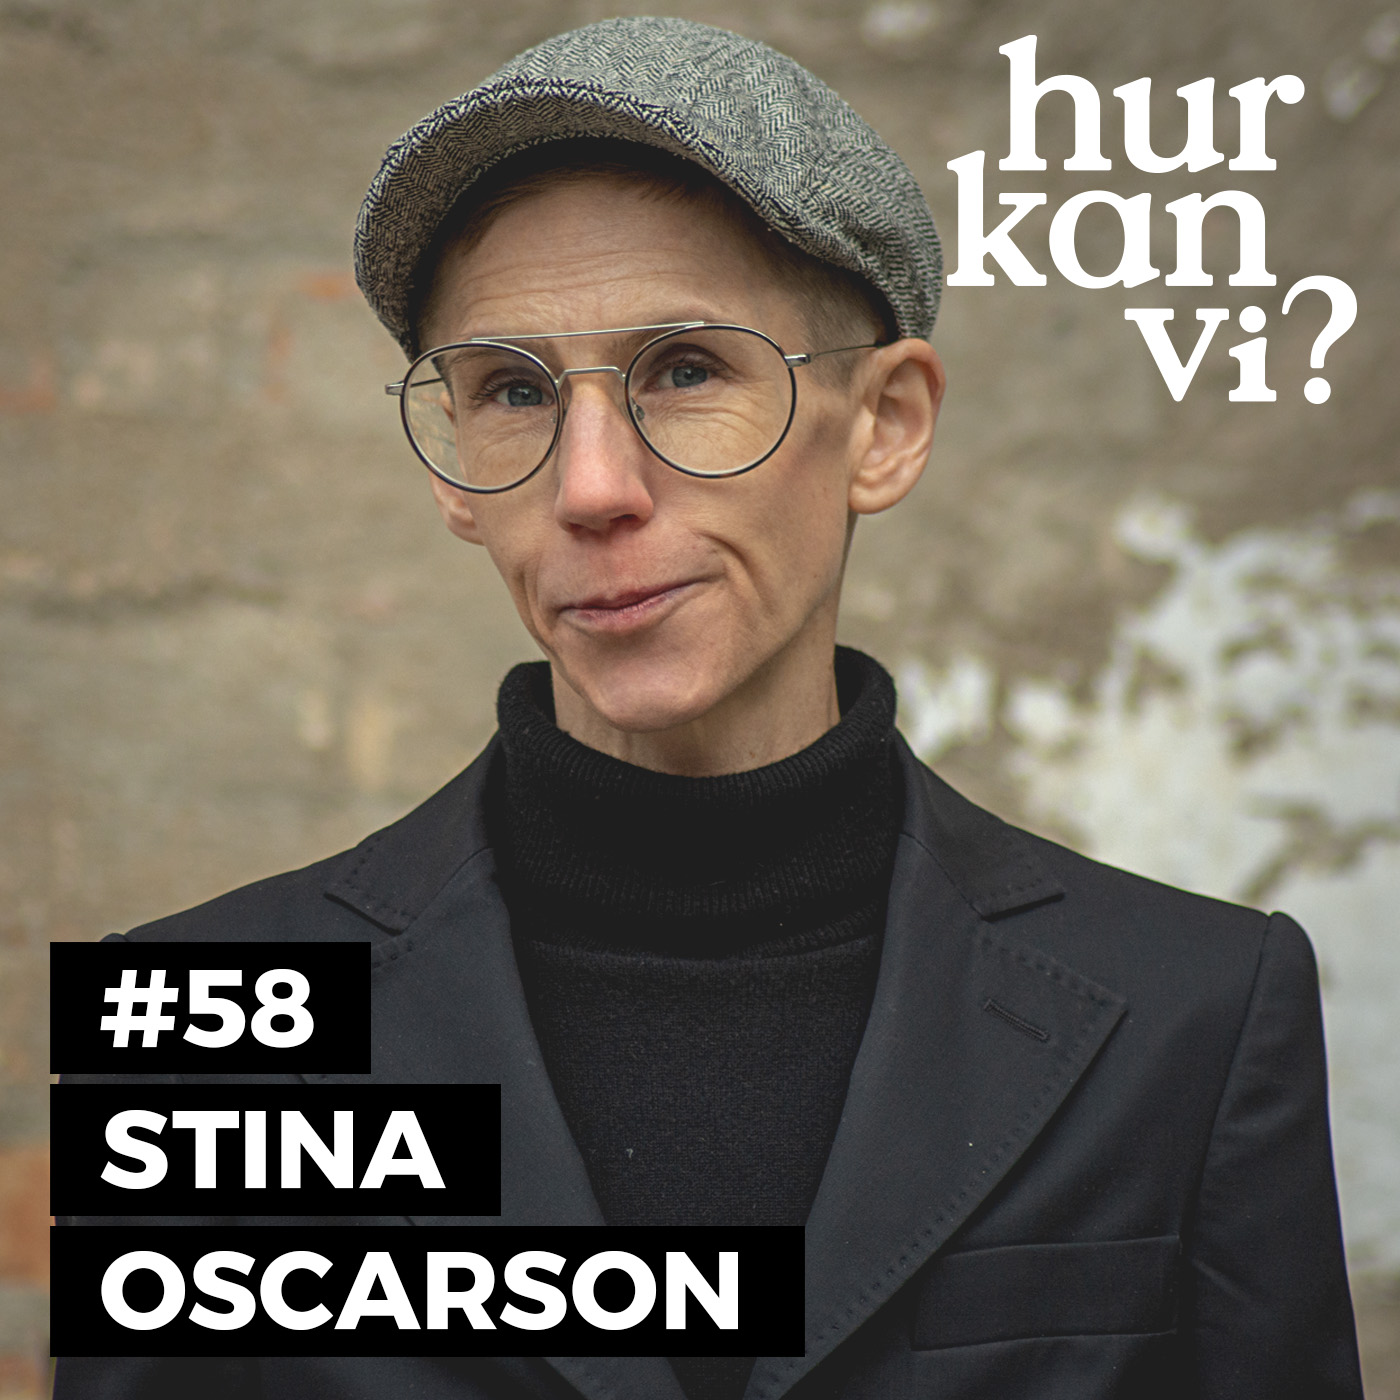 #58 Stina Oscarson – att tro på samtalet gör dig inte till extremist